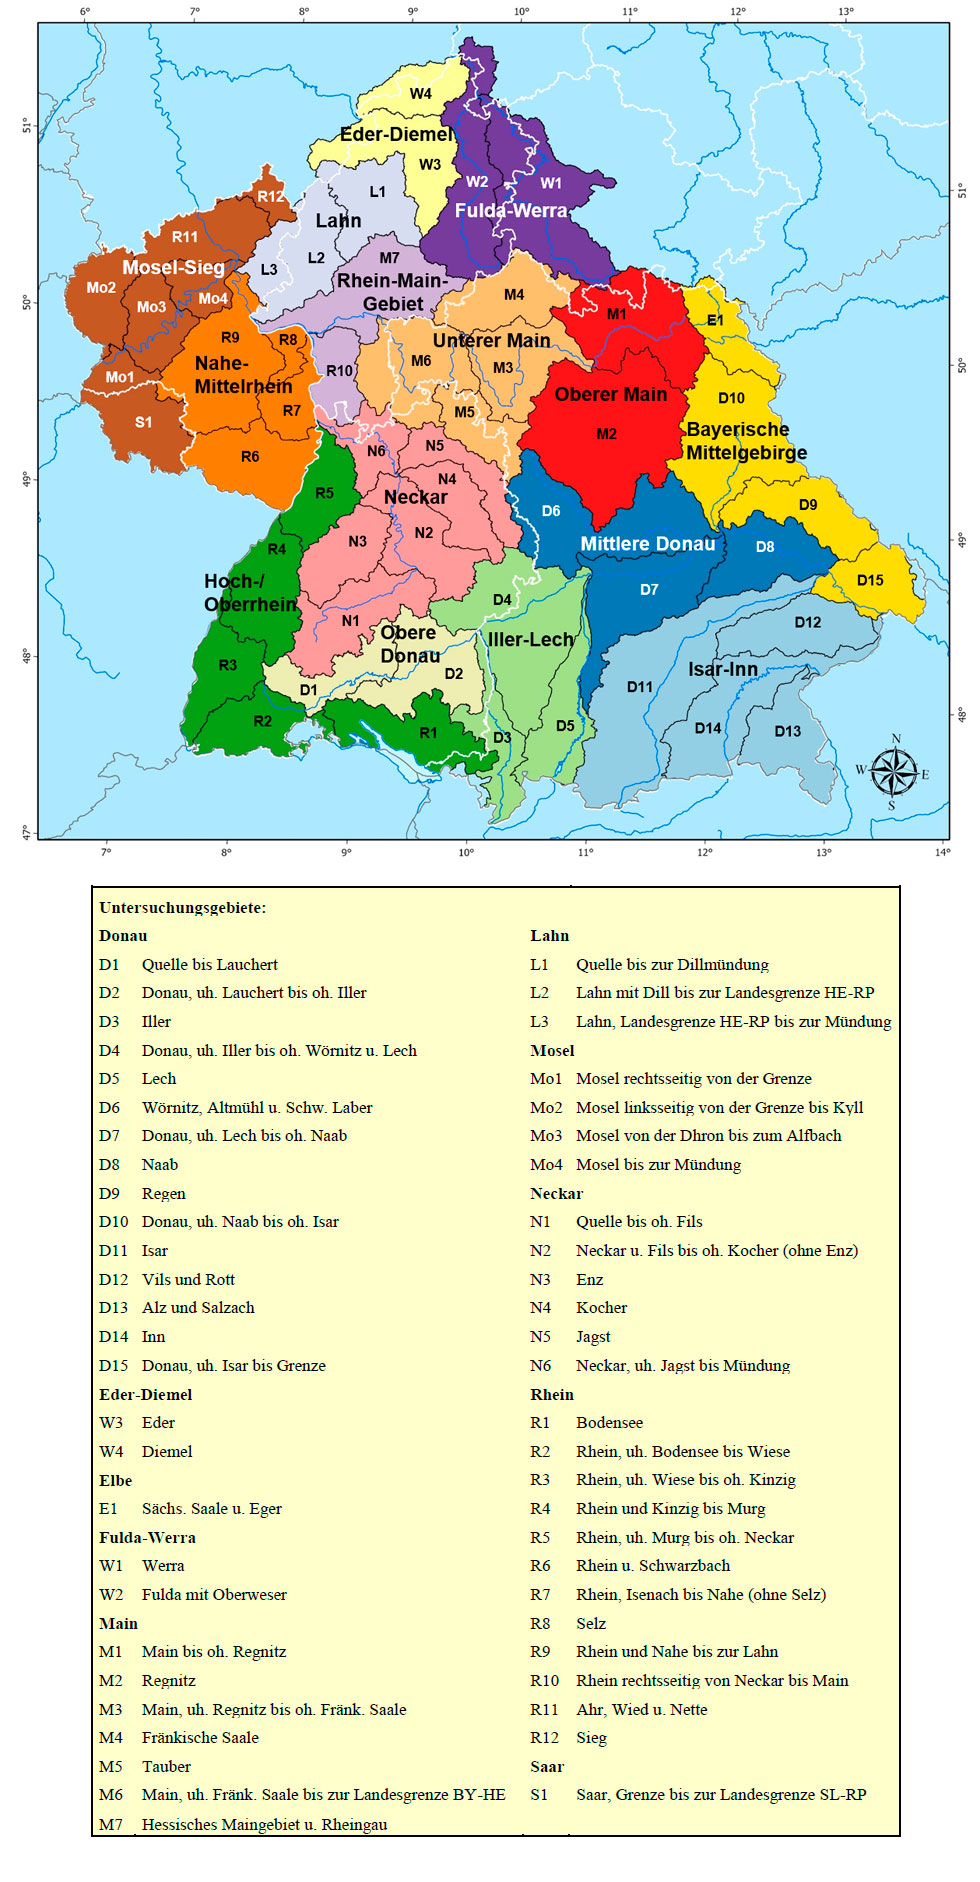 Die 53 KLIWA-Untersuchungsgebiete als Landkarte und in Listenform dargestellt. In der oberen Hälfte der Abbildung ist eine Landkarte mit den 13 KLIWA-Regionen und den ihnen jeweils zugeordneten Untersuchungsgebieten zu sehen. In der unteren Hälfte der Abbildung befindet sich eine Liste der Untersuchungsgebietsnamen, geordnet nach den Einzugsgebieten in denen diese liegen.